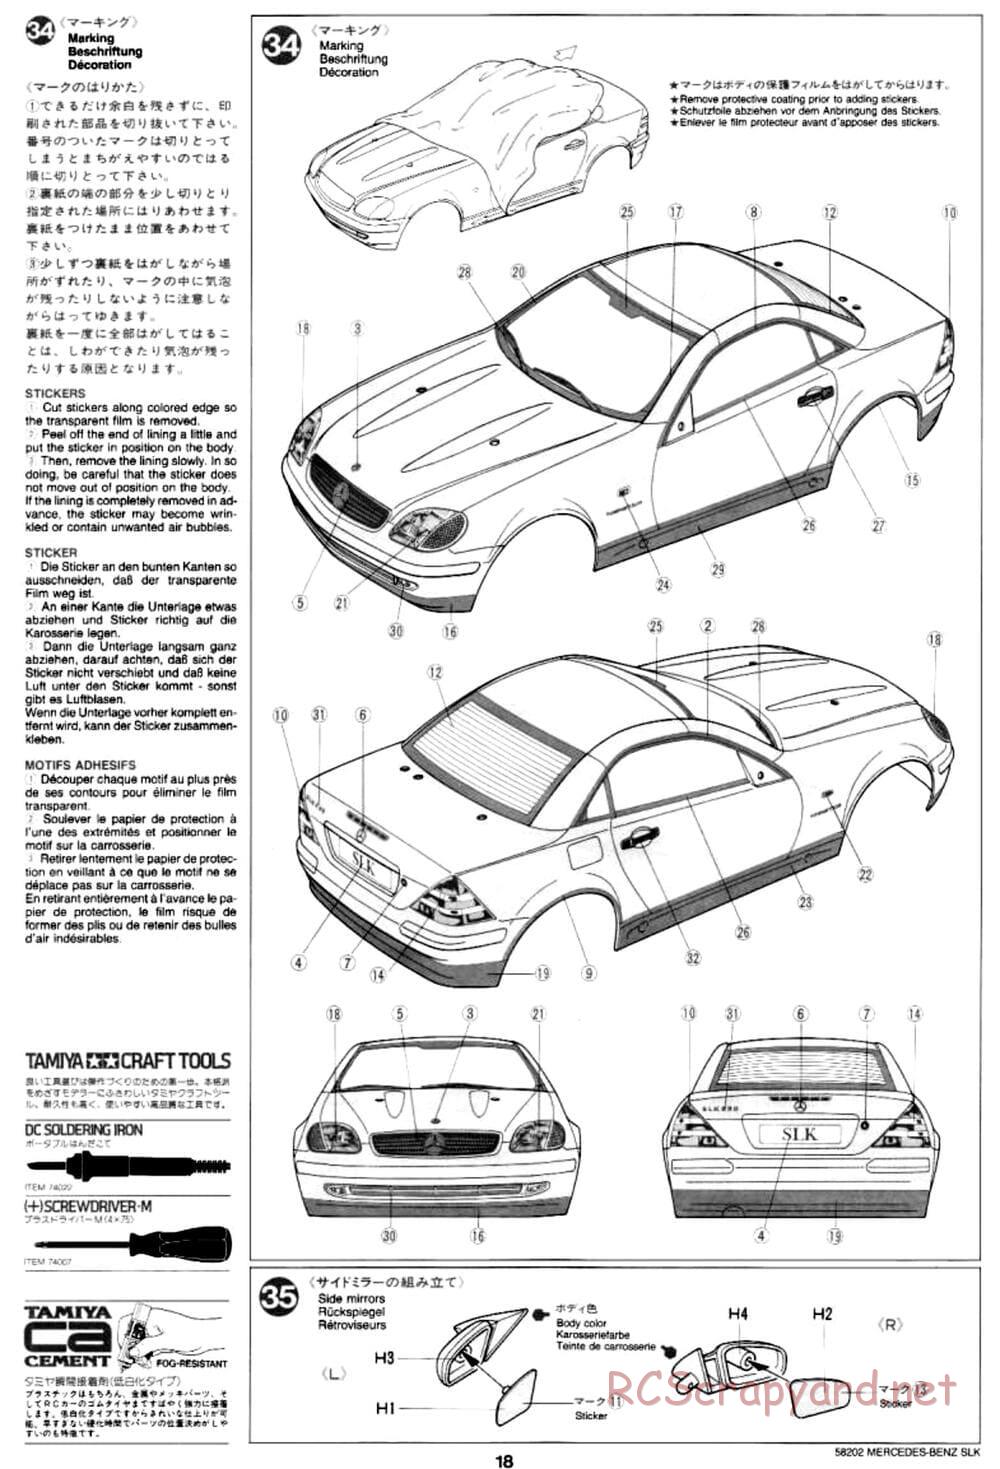 Tamiya - Mercedes-Benz SLK - M02L Chassis - Manual - Page 18